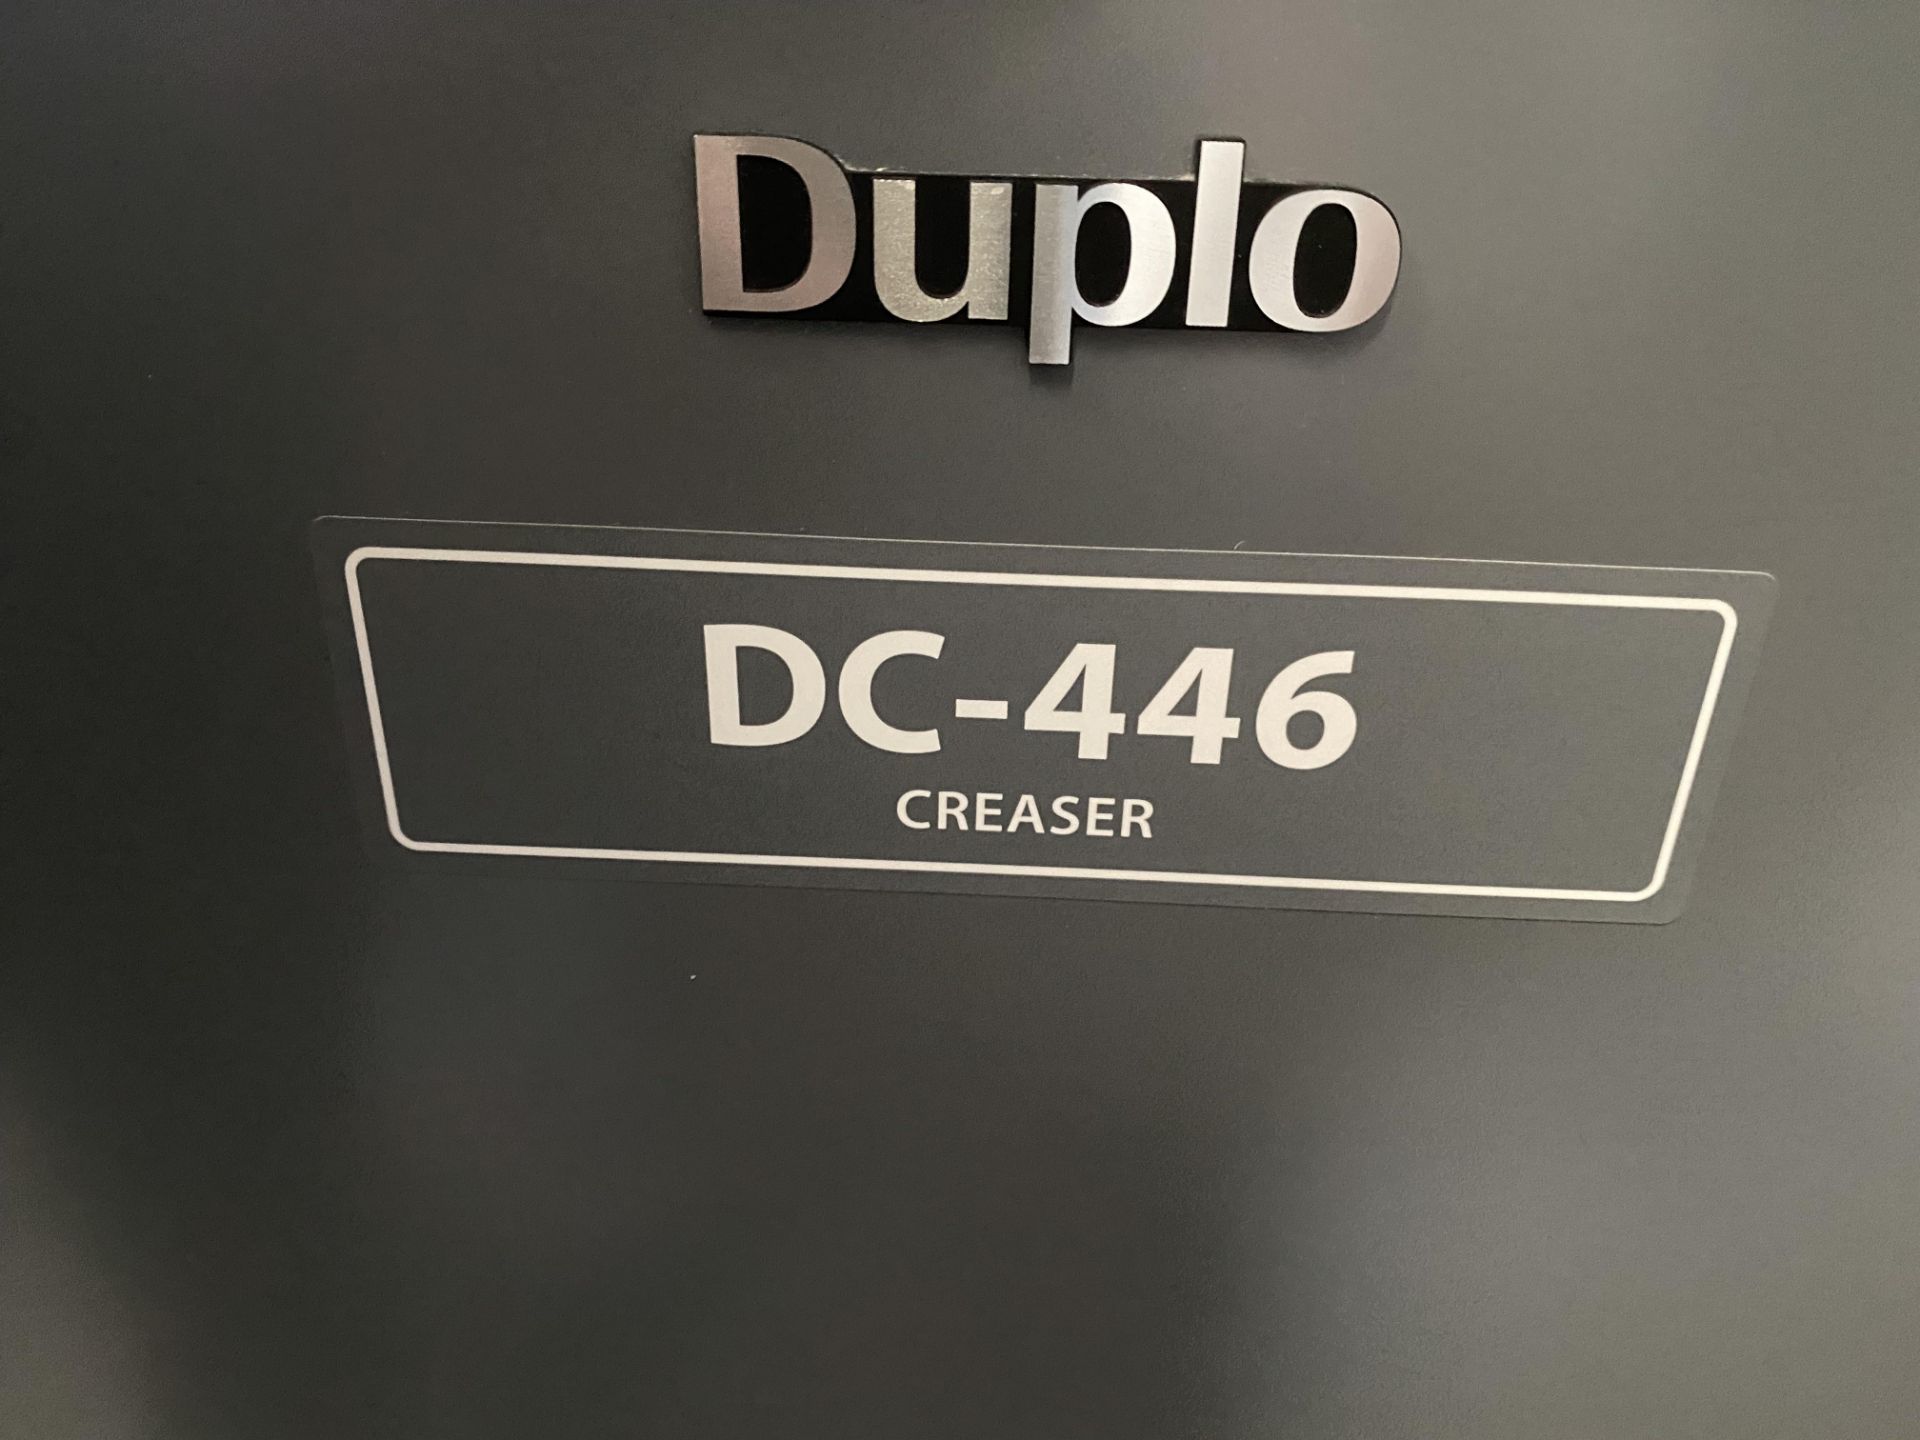 Duplo DC-446 creaser, serial no. 200452606 (2020) - Image 4 of 6